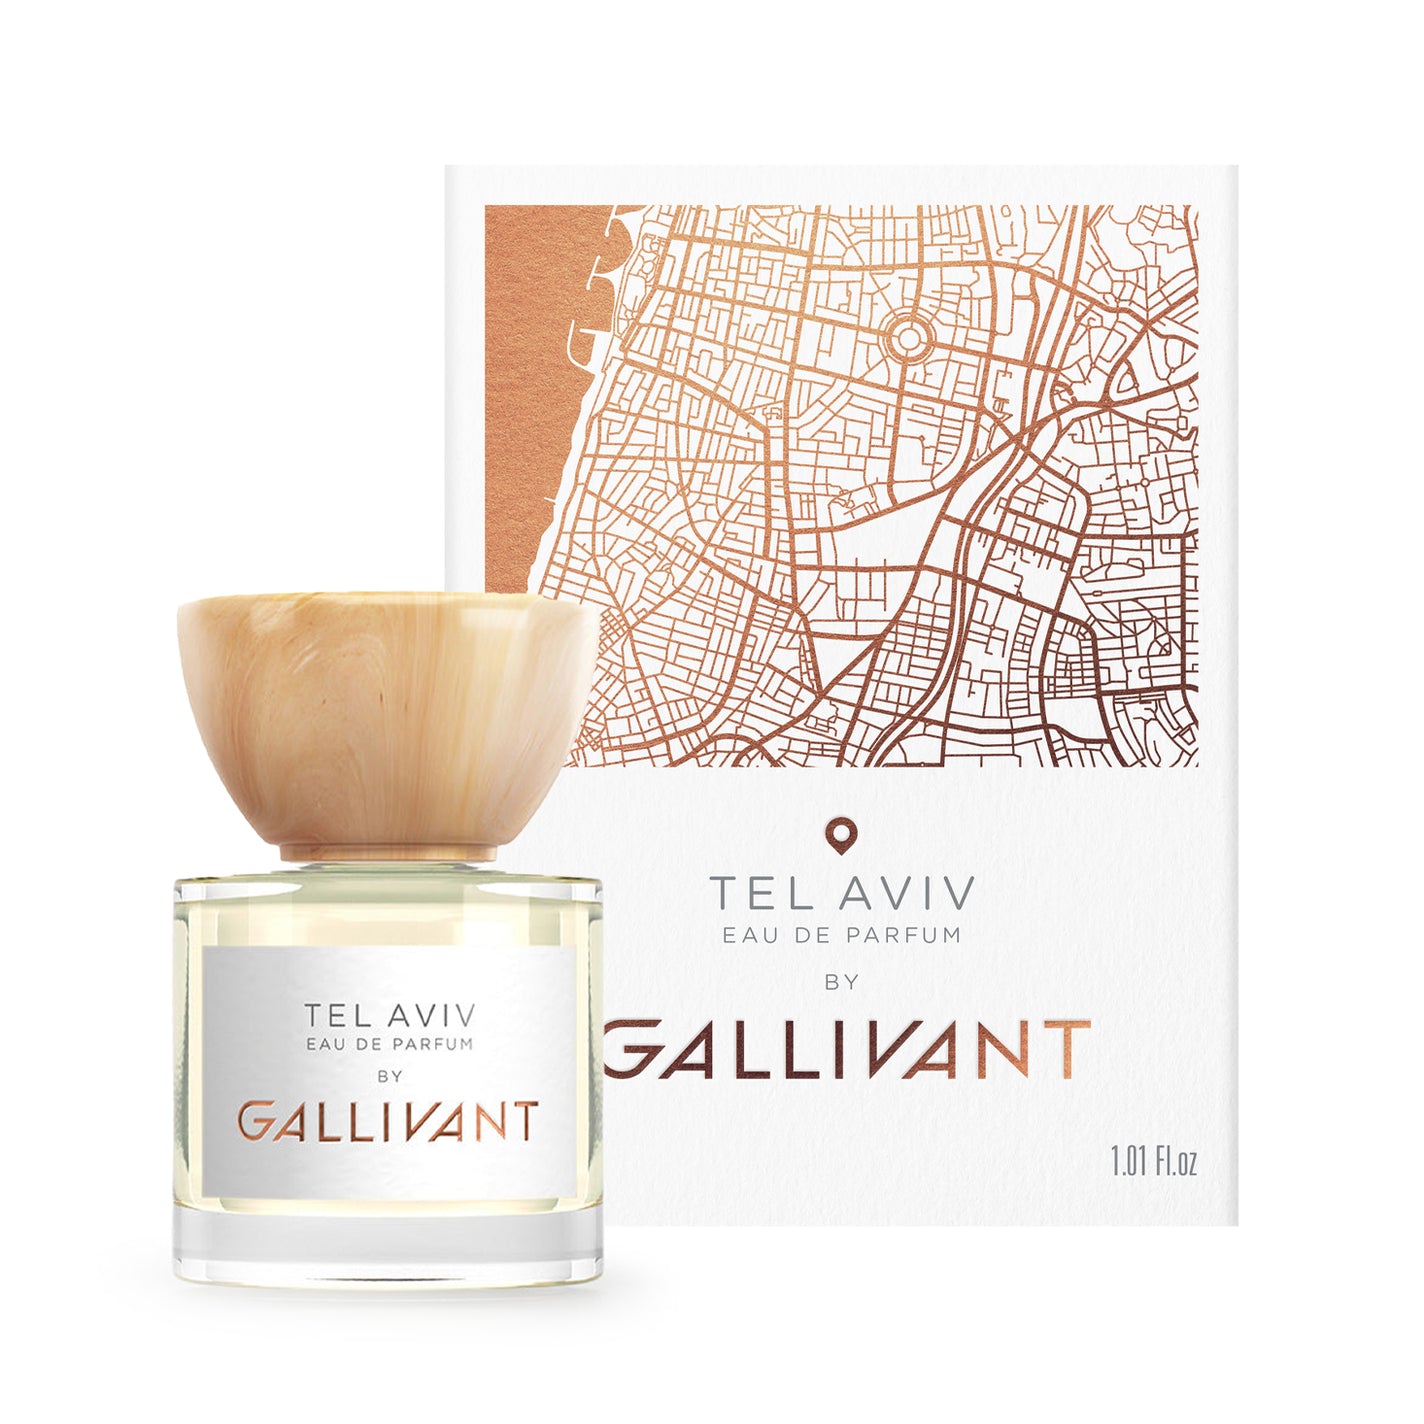 GALLIVANT Tel Aviv Eau de Parfum - 30ml